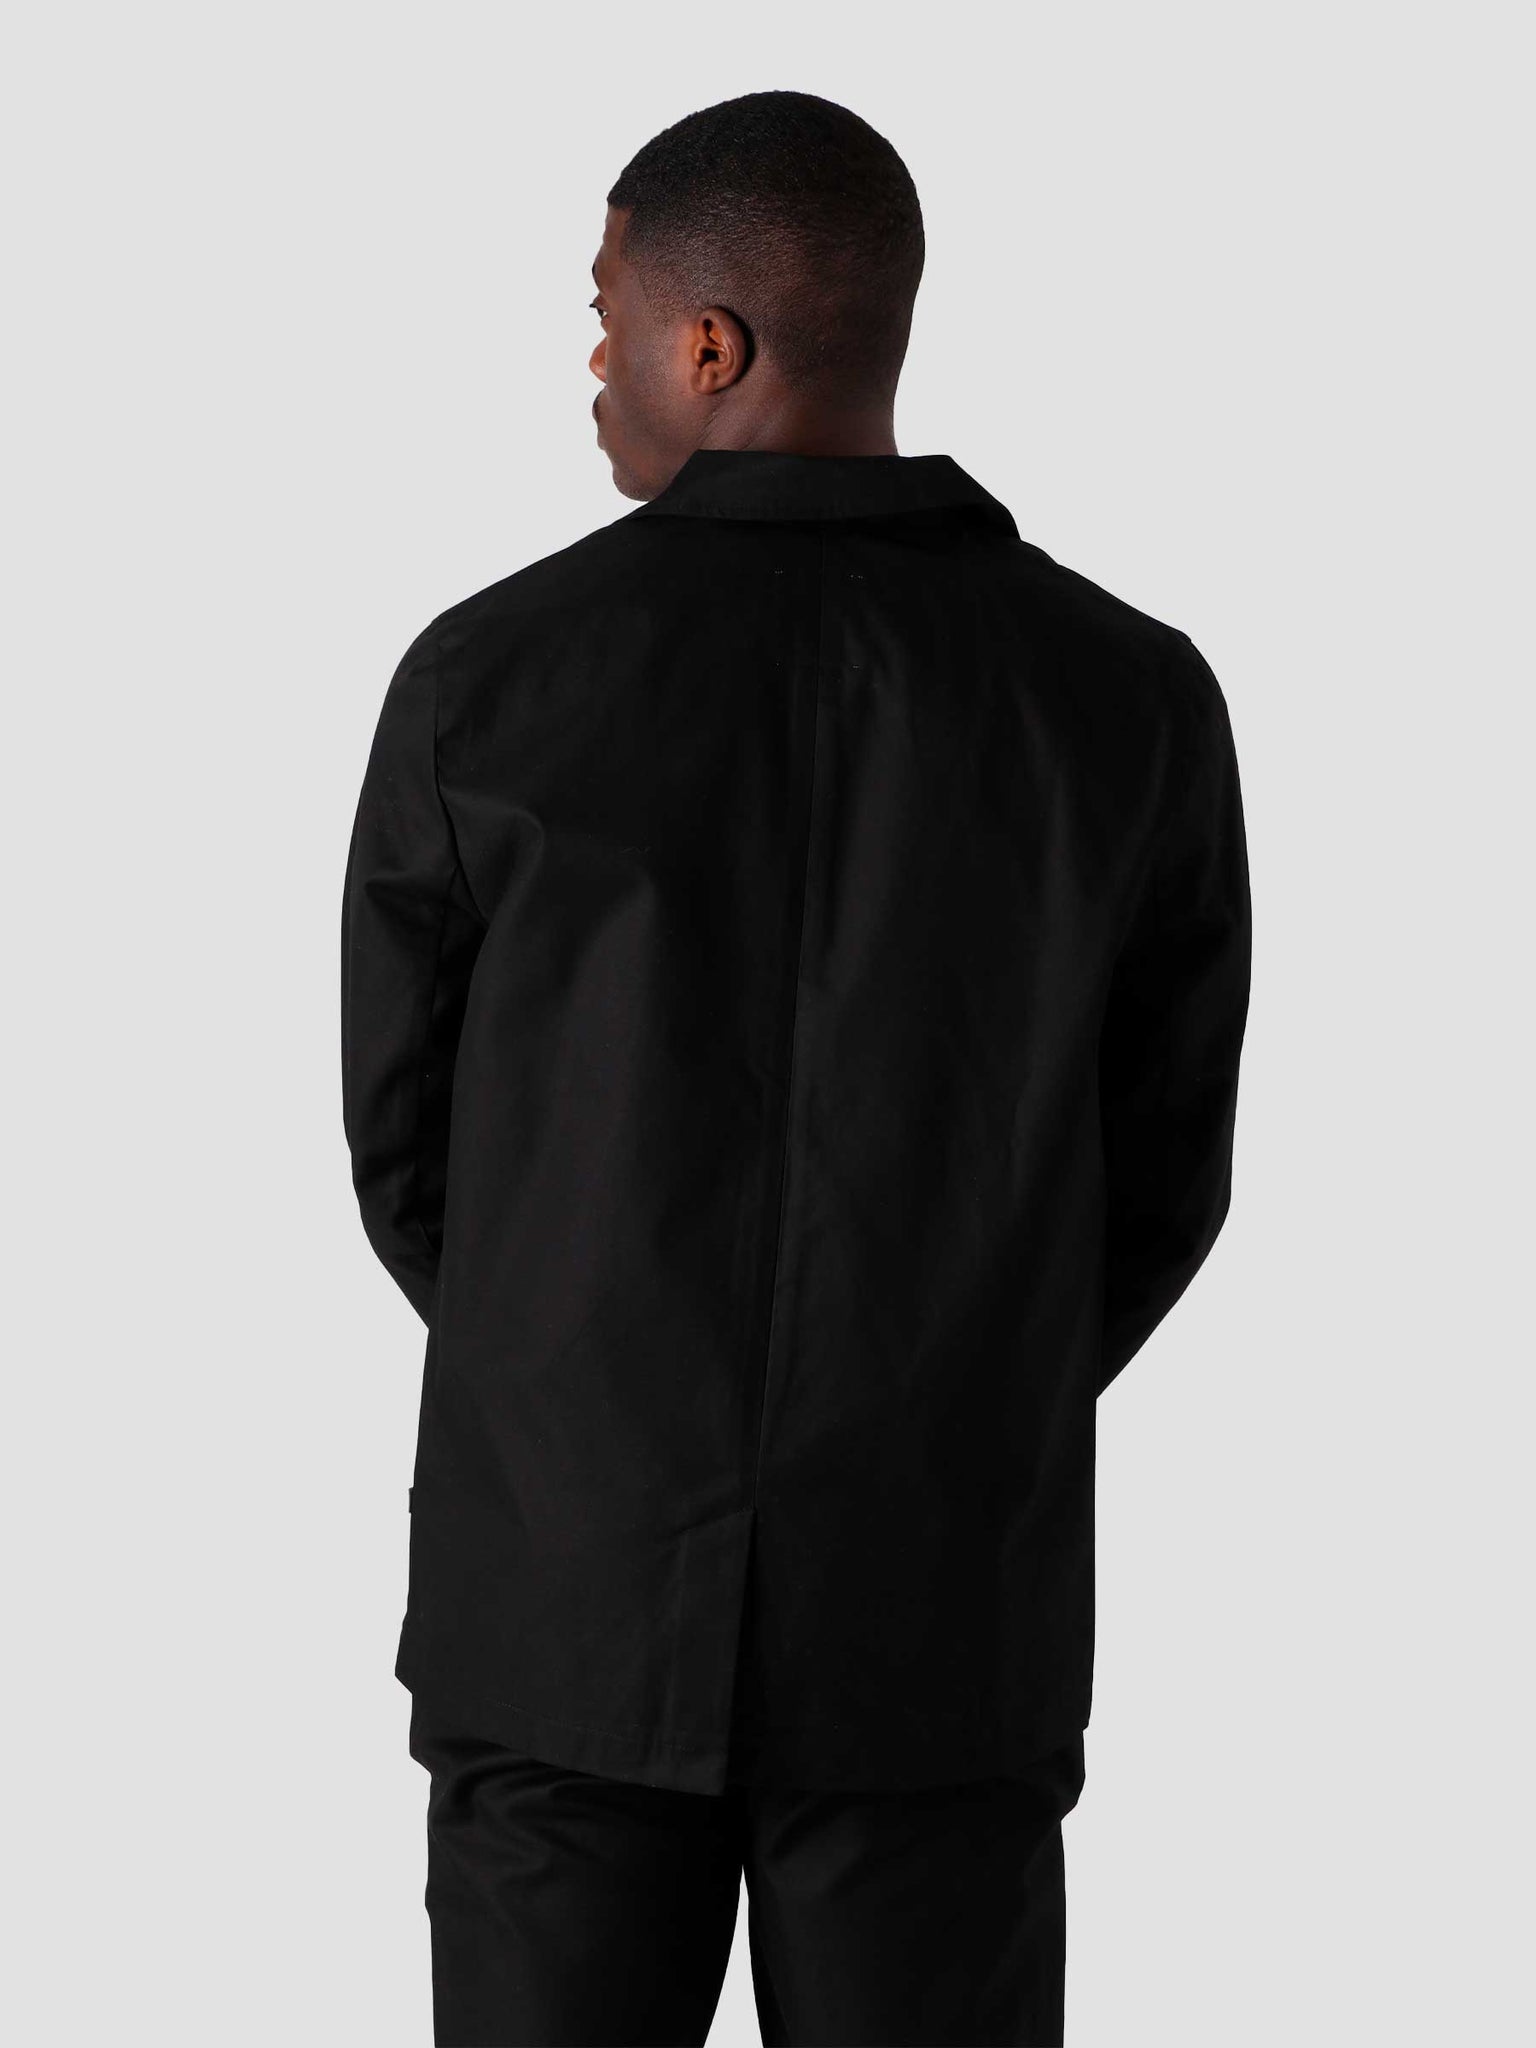 QB208 Suit Jacket Black